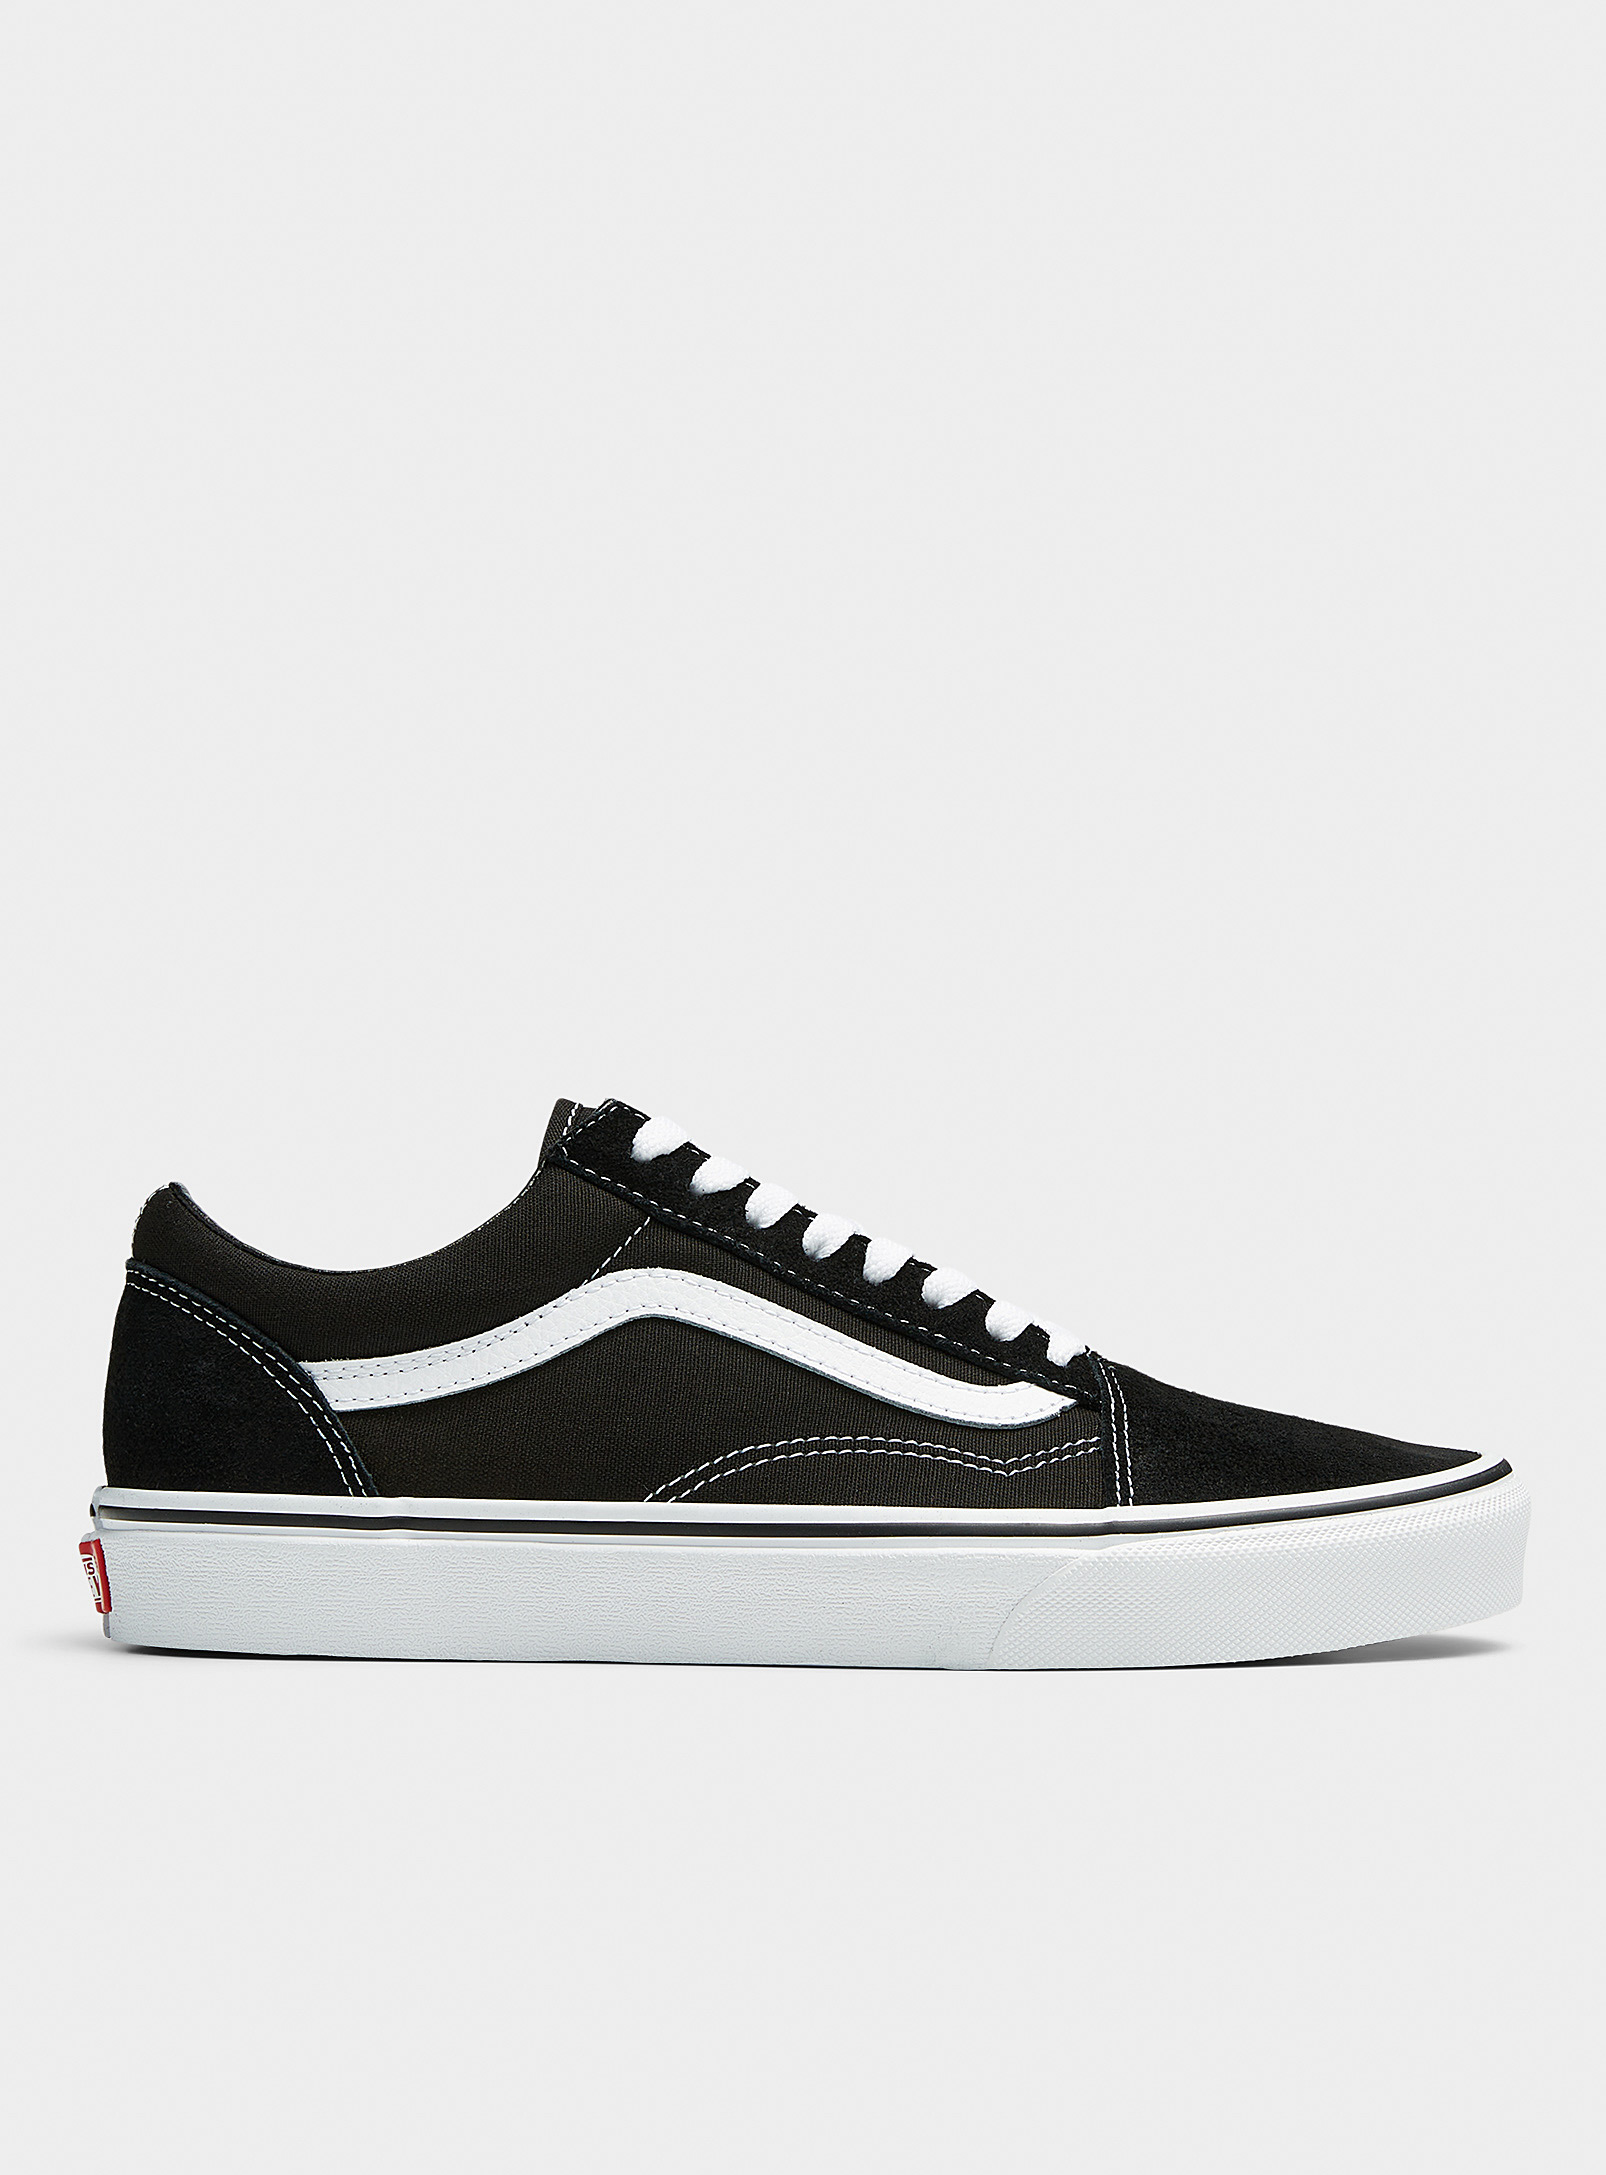 Shop Vans Black And White Old Skool Sneakers Men